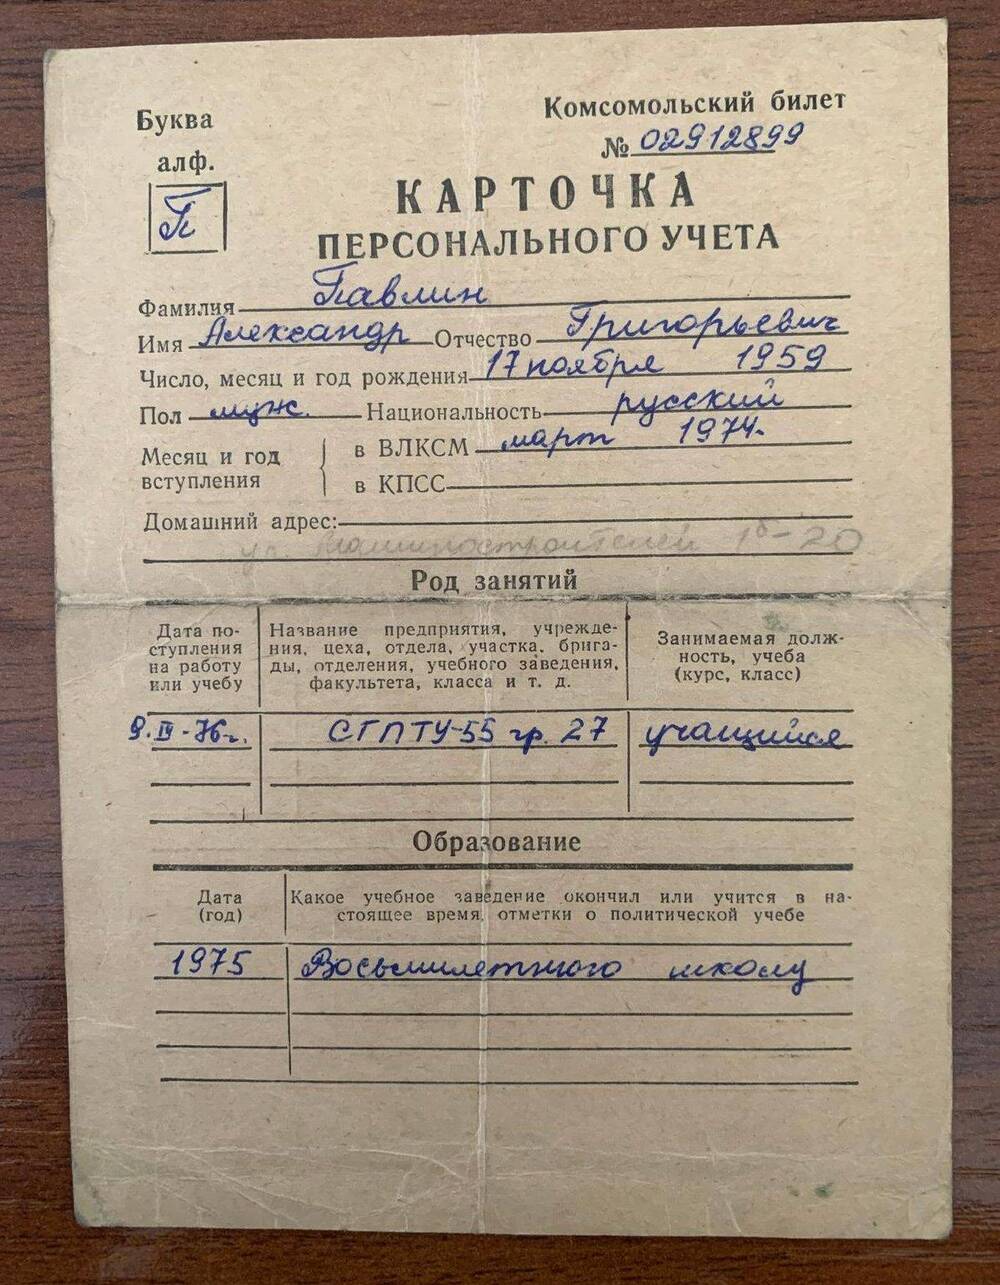 Карточка персонального учёта учащегося СГАТУ-55 Павлина А.Г.